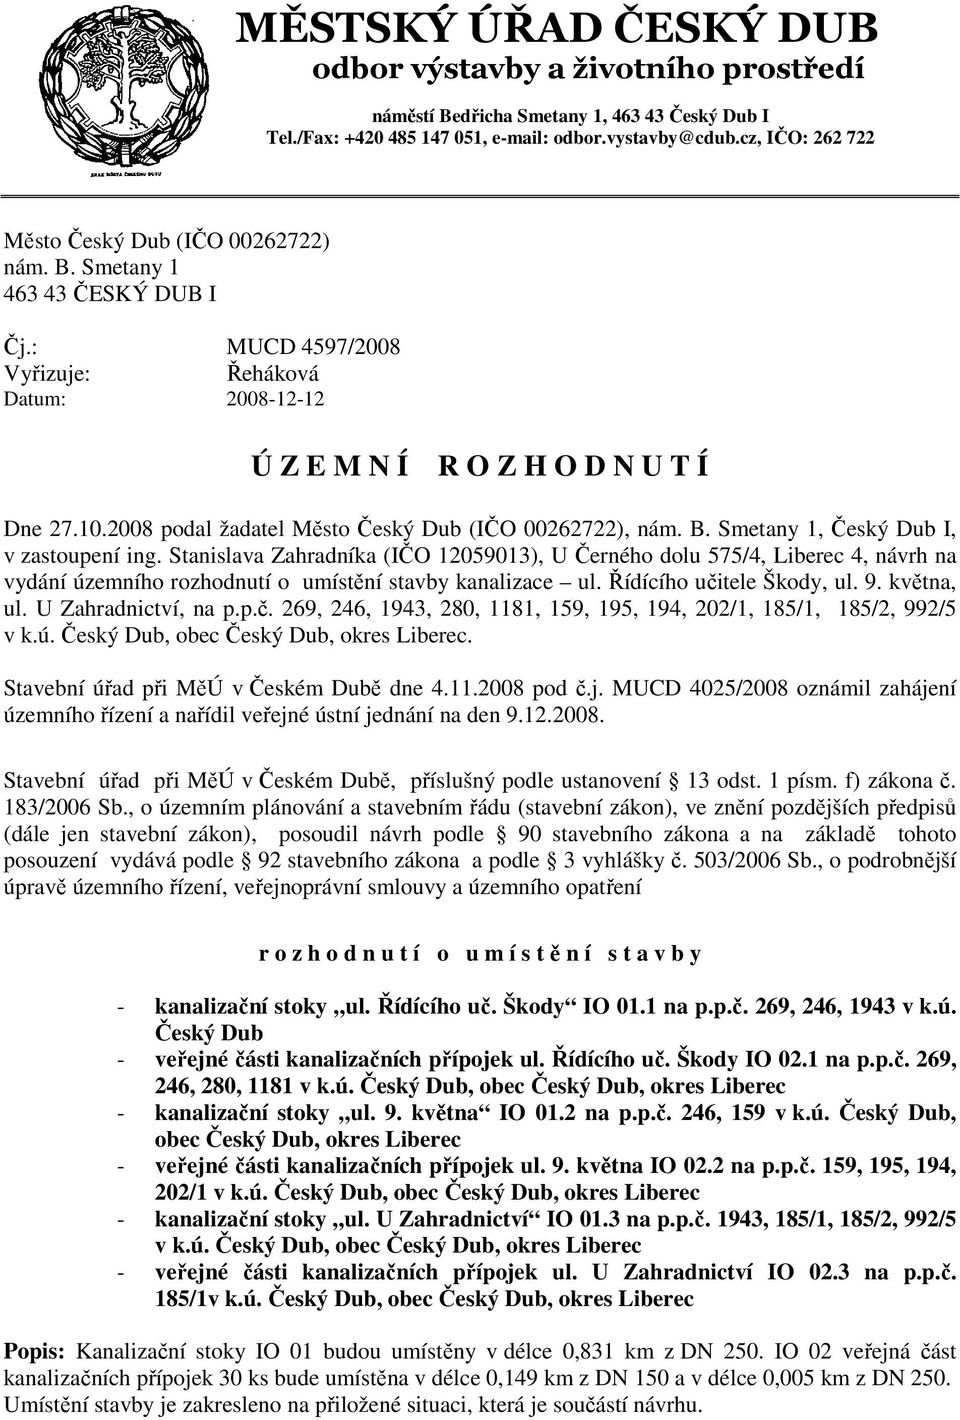 2008 podal žadatel Město Český Dub (IČO 00262722), nám. B. Smetany 1, Český Dub I, v zastoupení ing.